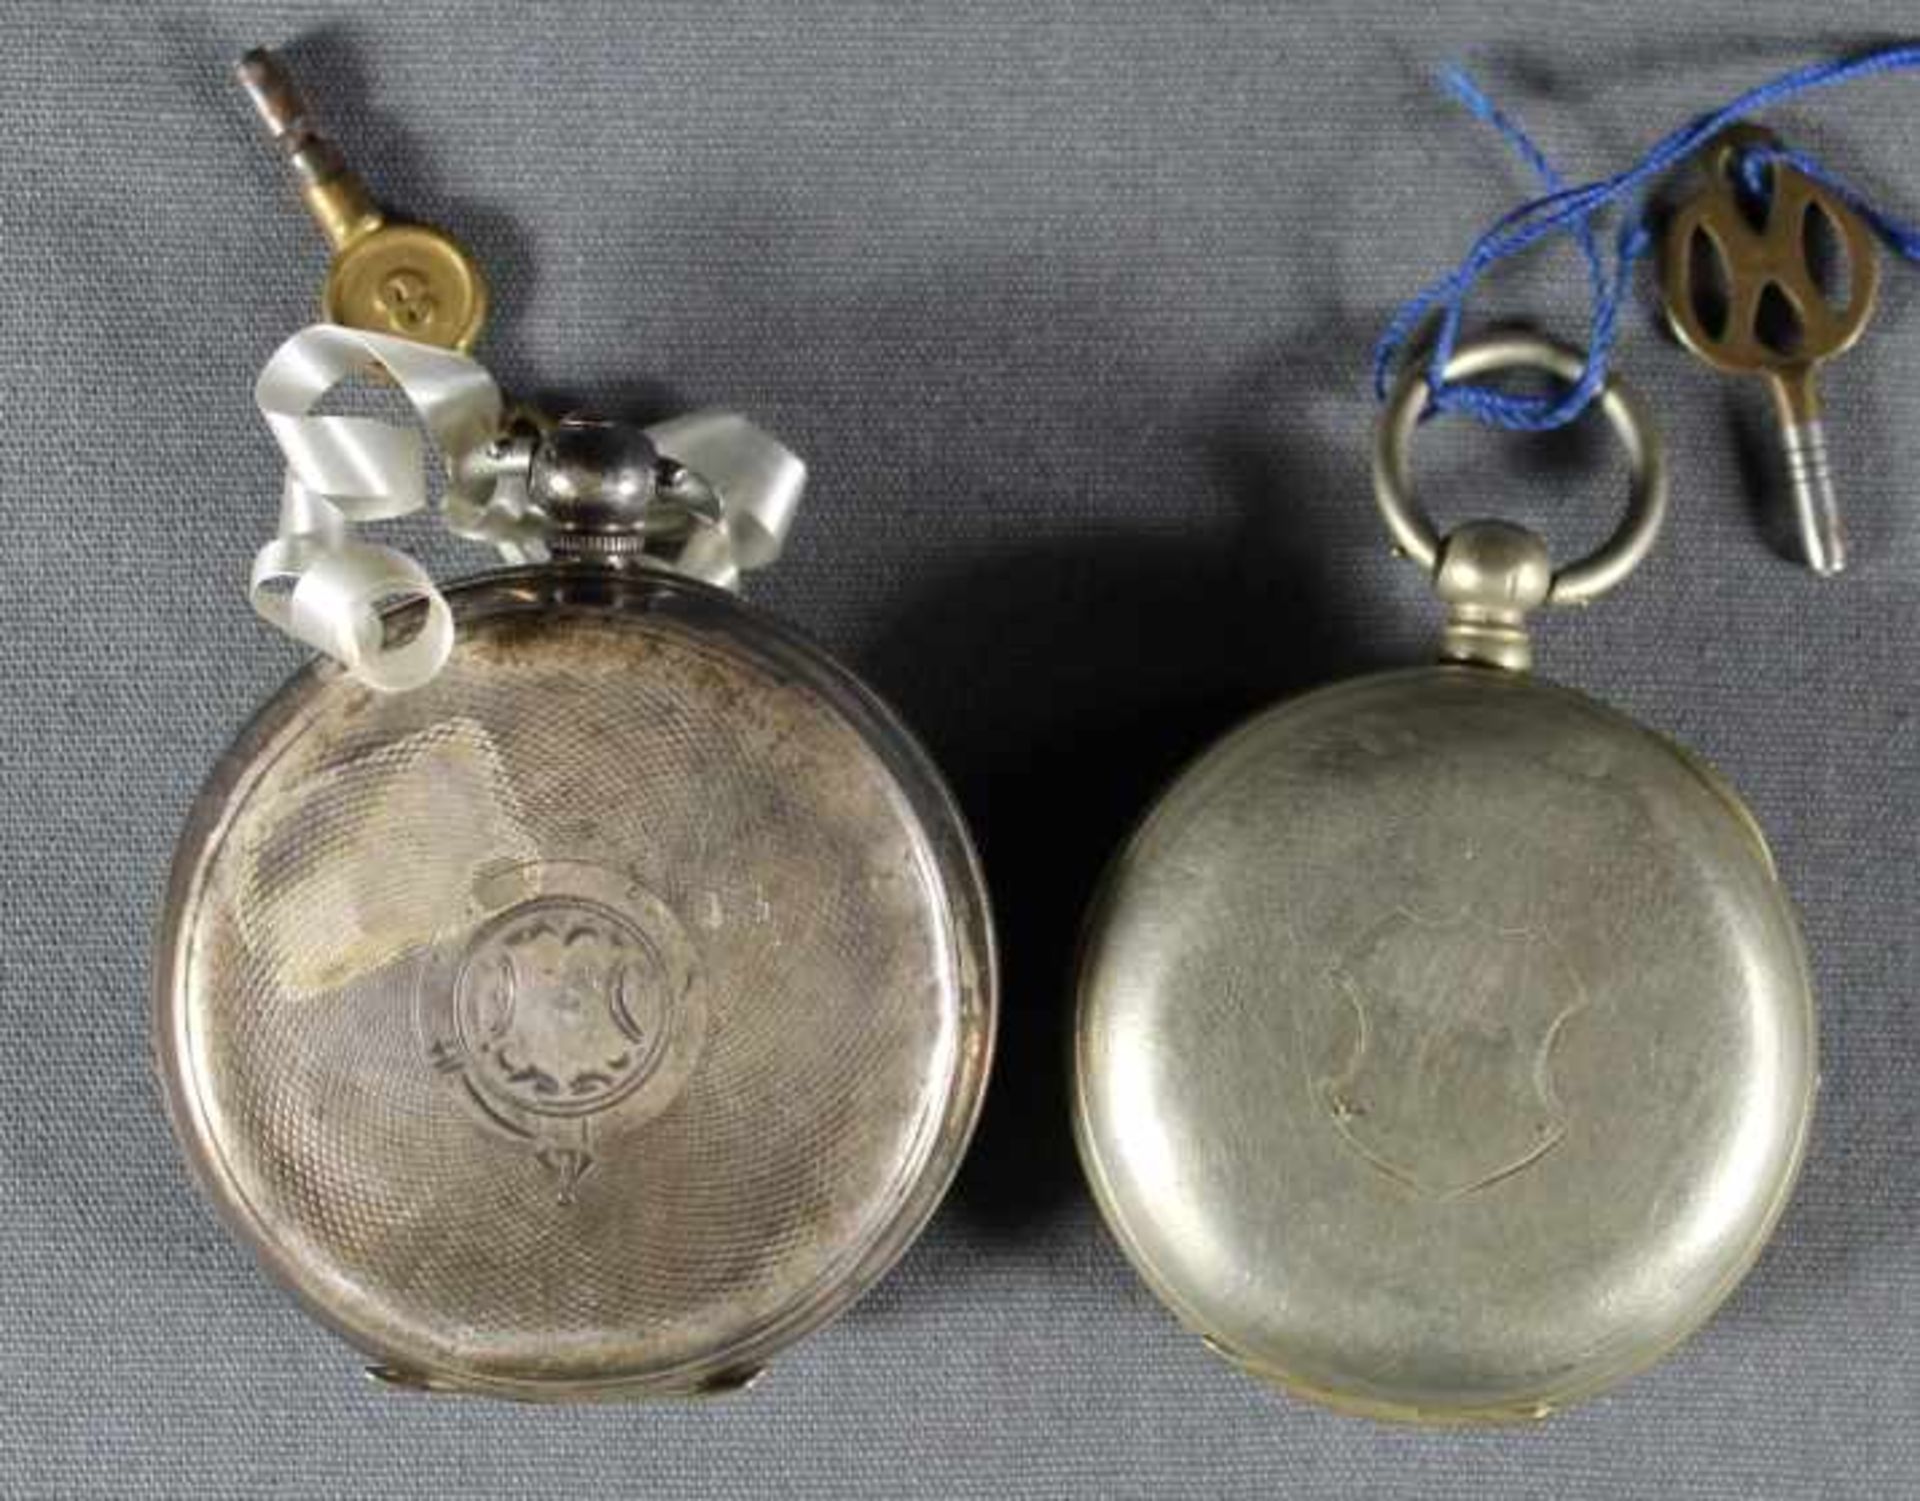 2 Taschenuhren Silber, punziert, weiße Zifferblätter mit schwarzen römischen Zahlen, kleine Sekunde, - Bild 2 aus 3